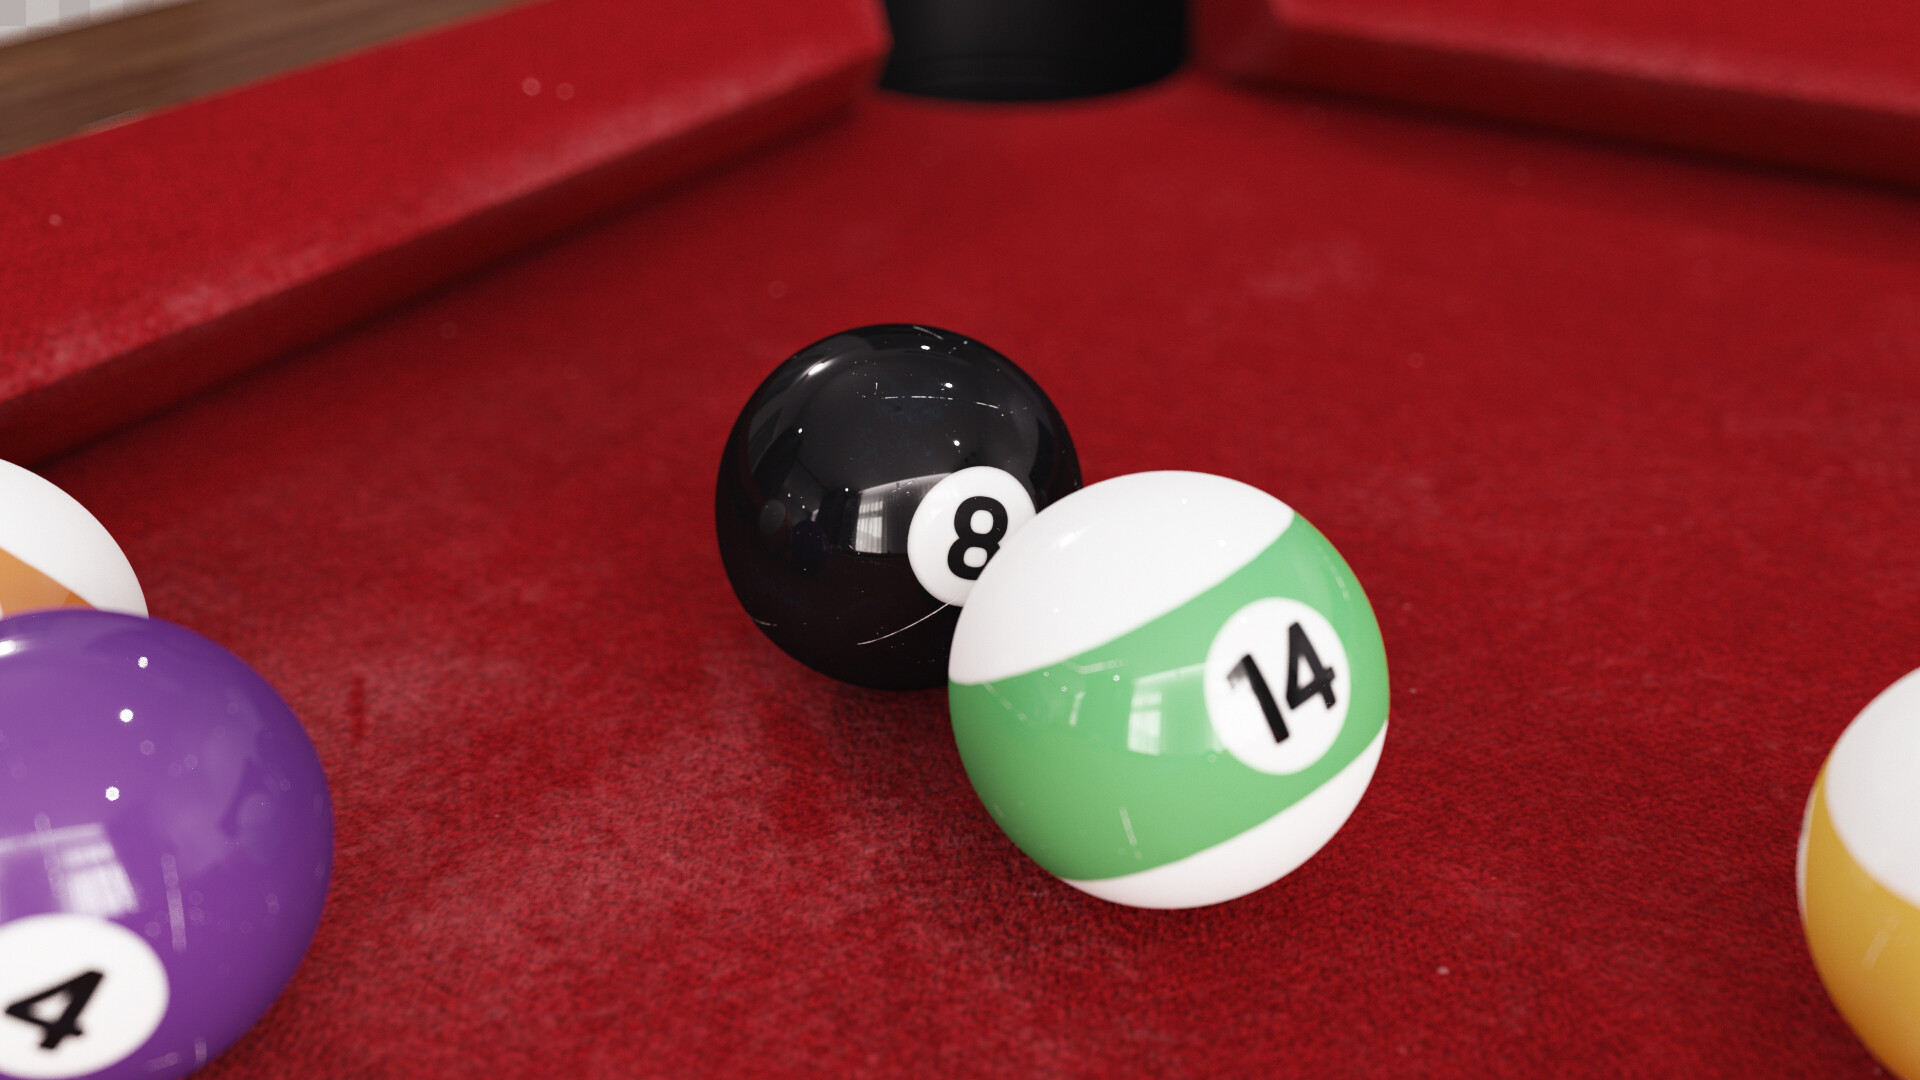 Billiards Balls Cinema 4D Models for Download